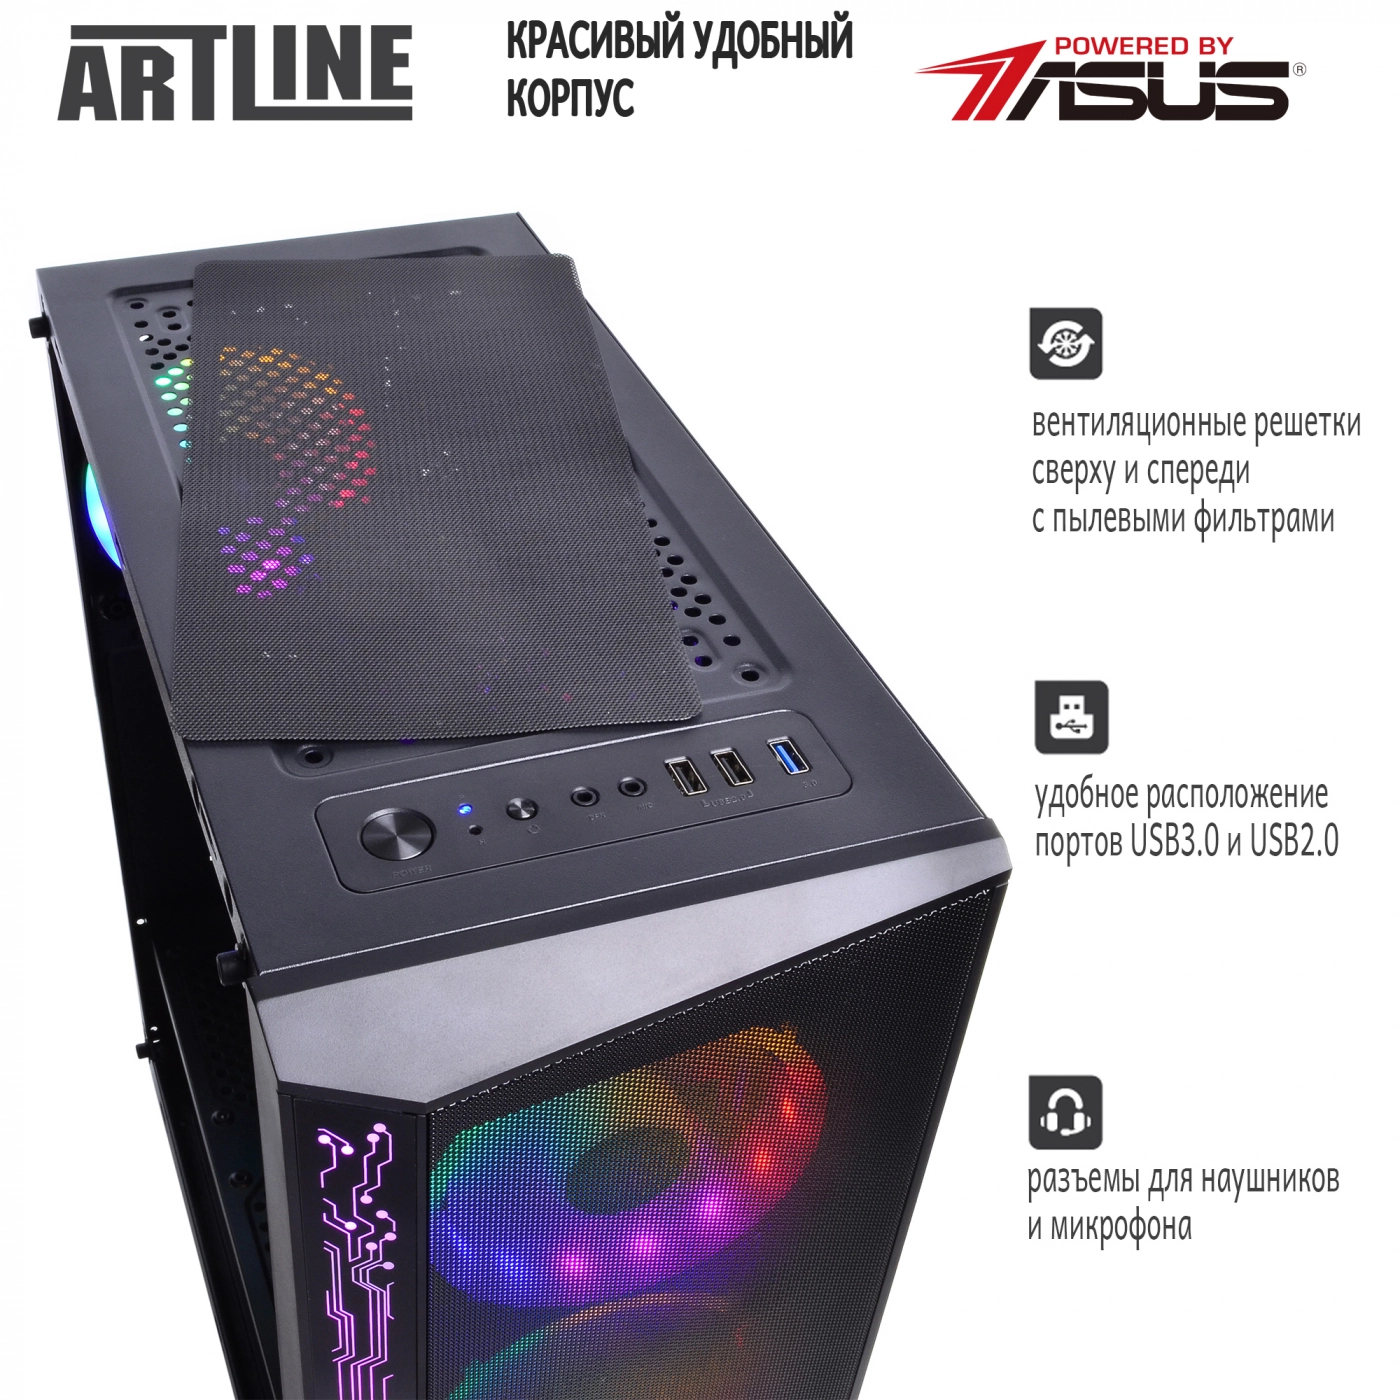 Купить Компьютер ARTLINE Gaming X55v20 - фото 4